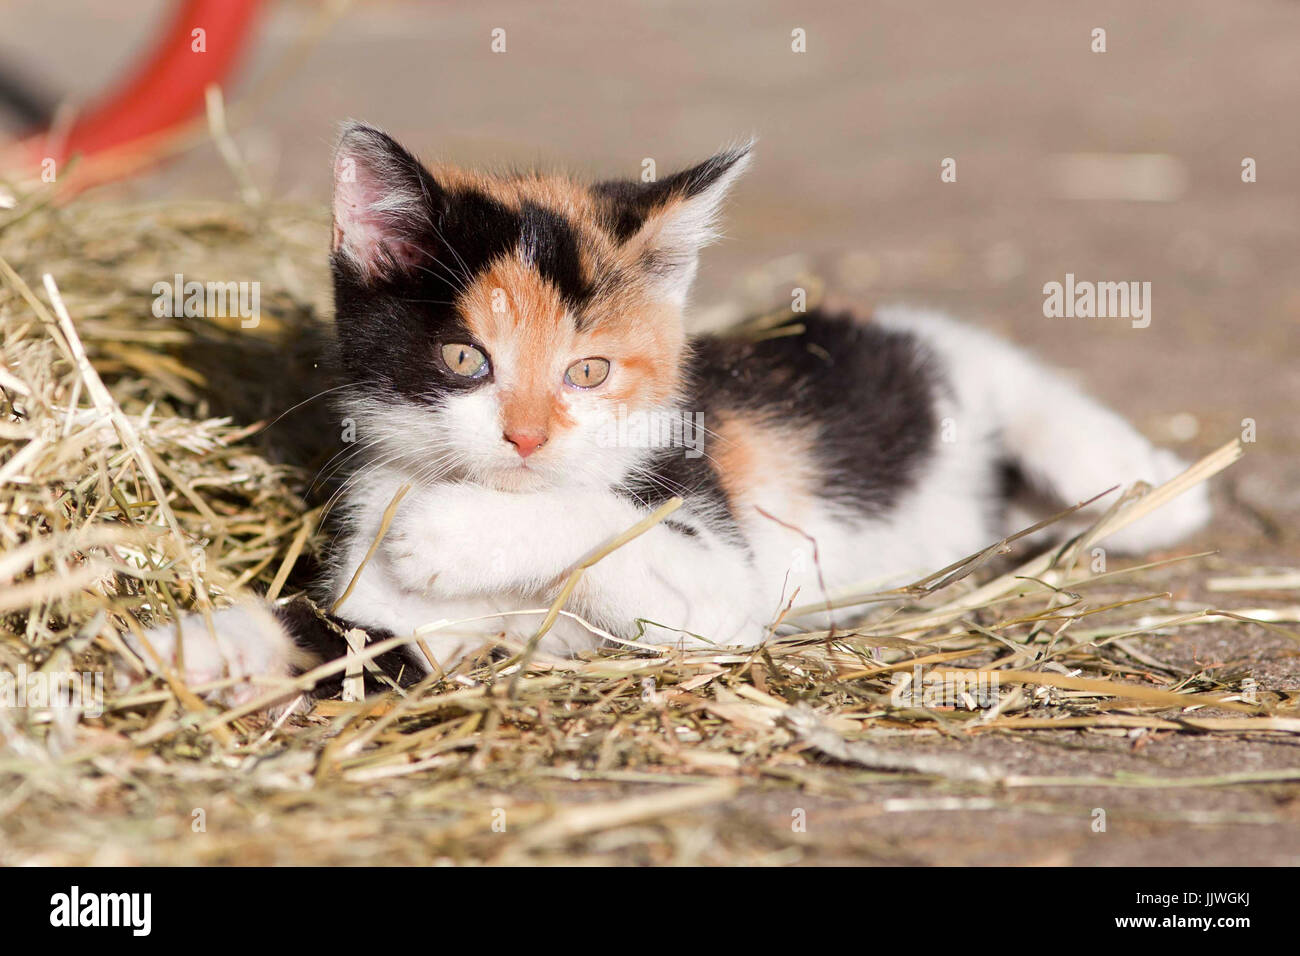 Baby Katze, niedliche Kätzchen spielen und Schlafen im Stroh. Bauernhof  Katze lag in Stroh Stockfotografie - Alamy